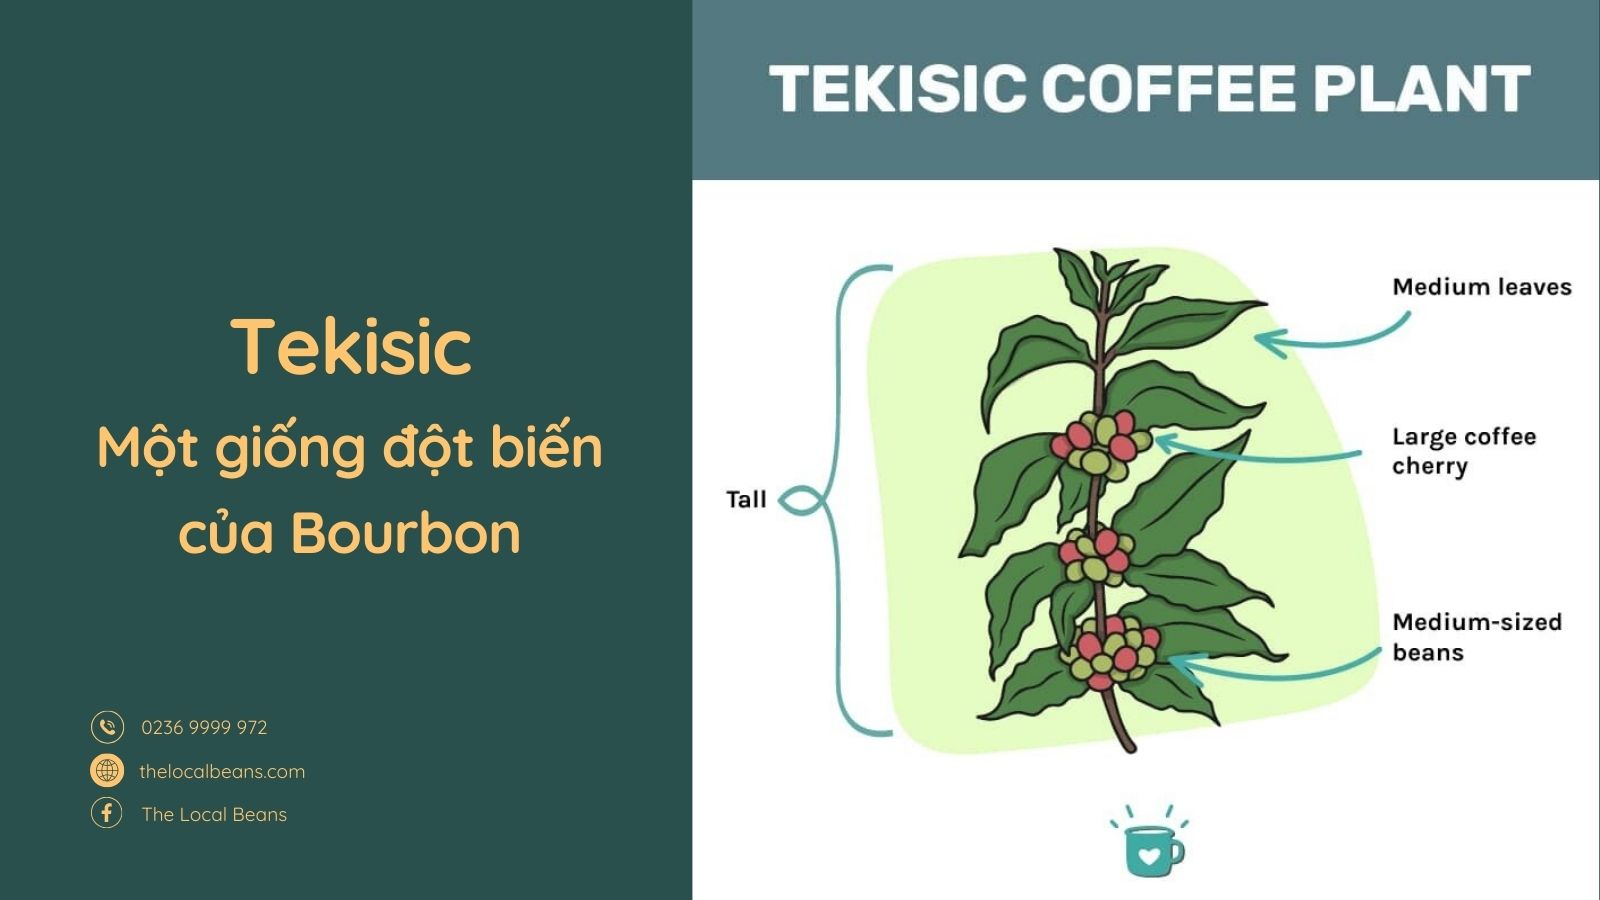 Hình ảnh miêu tả đặc điểm sinh học của cây cà phê Tekisik/Tekisic